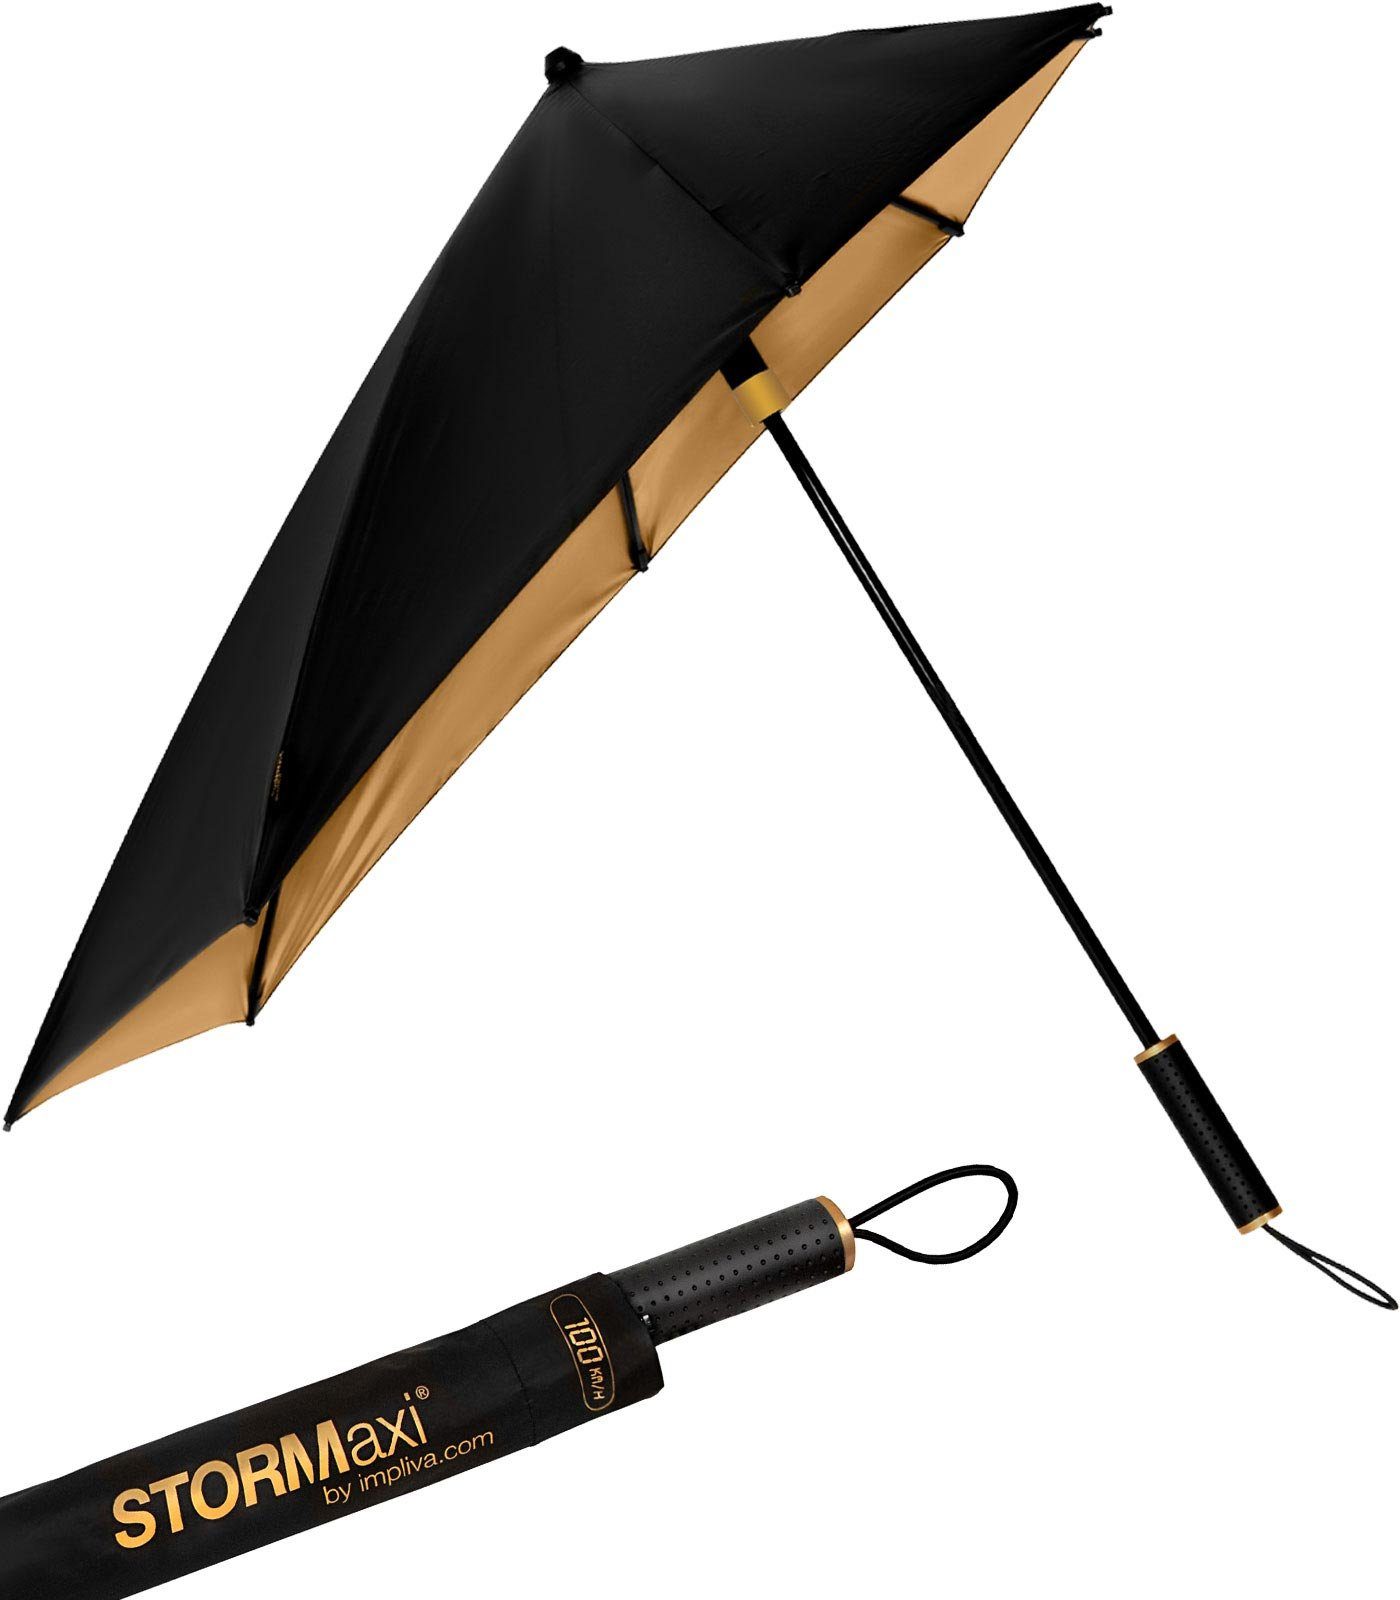 Impliva Stockregenschirm STORMaxi aerodynamischer Sturmschirm Metallic, durch seine besondere Form dreht sich der Schirm in den Wind, hält bis zu 80 km/h aus schwarz-gold